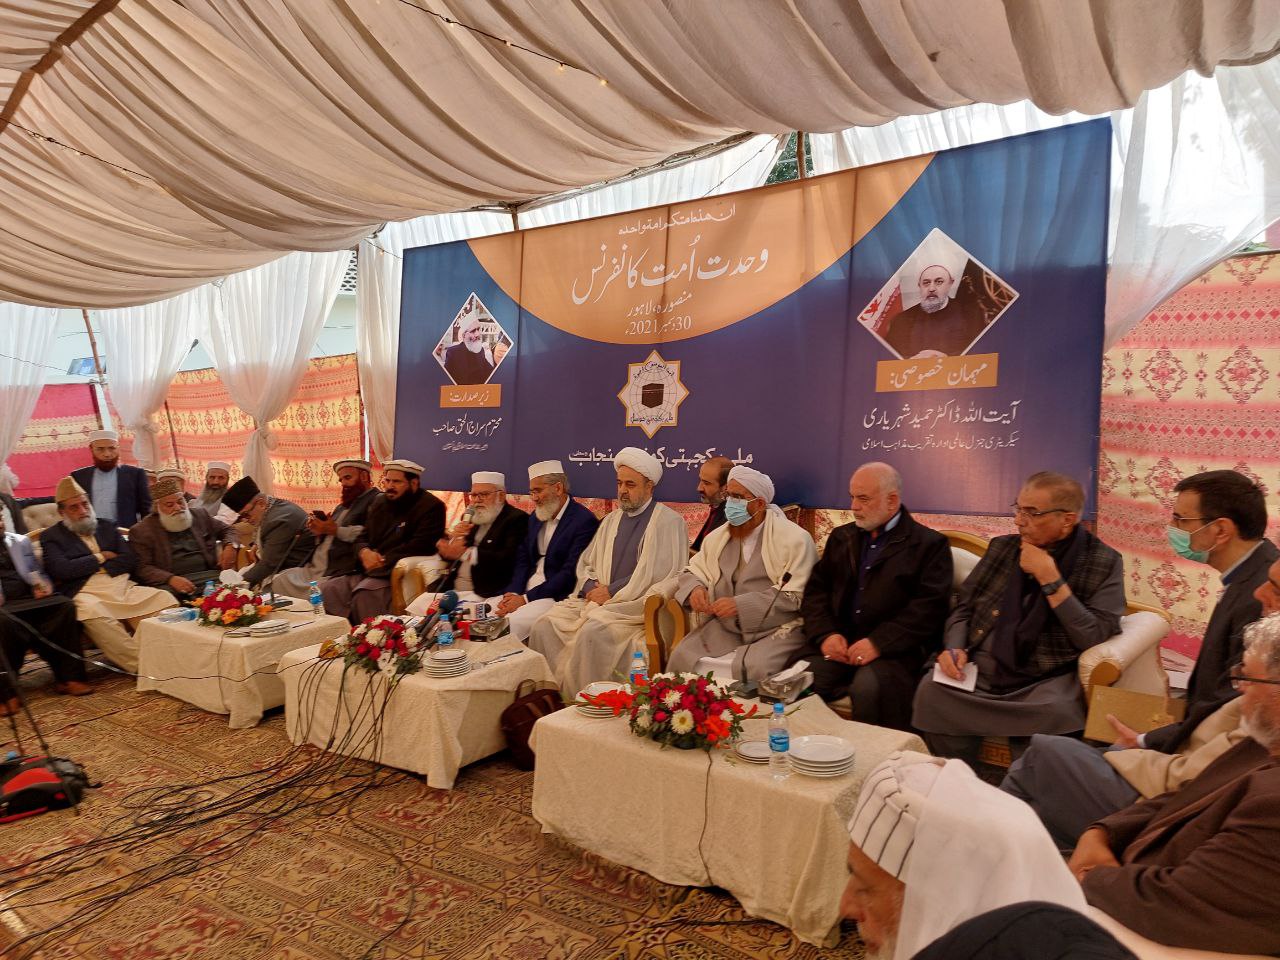 نشست وحدت اسلامی در جامعه منصوره لاهور پاکستان